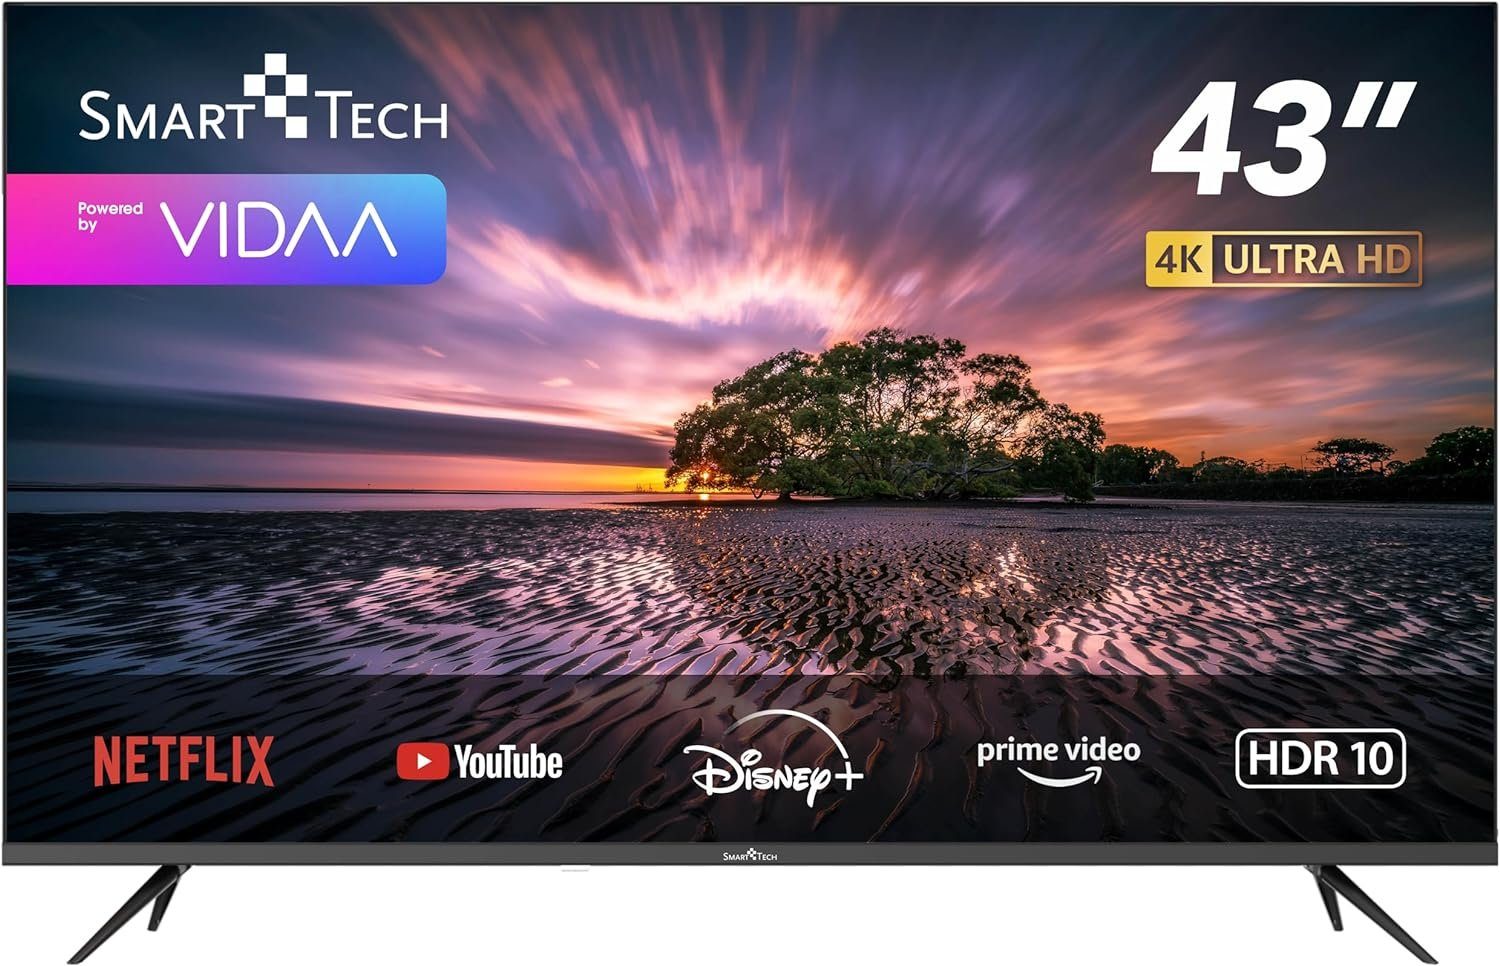 Smart Tech 43UV10V1 LCD-LED Fernseher (43 Zoll, 4K Ultra HD, Quad Core, 4K, DVB-T2/C/S2, WIFI, Dolby Audio HDMI USB Netflix/YouTube, Quad Core, 4K, DVB-T2/C/S2, WIFI, Dolby Audio HDMI USB Netflix/YouTube)